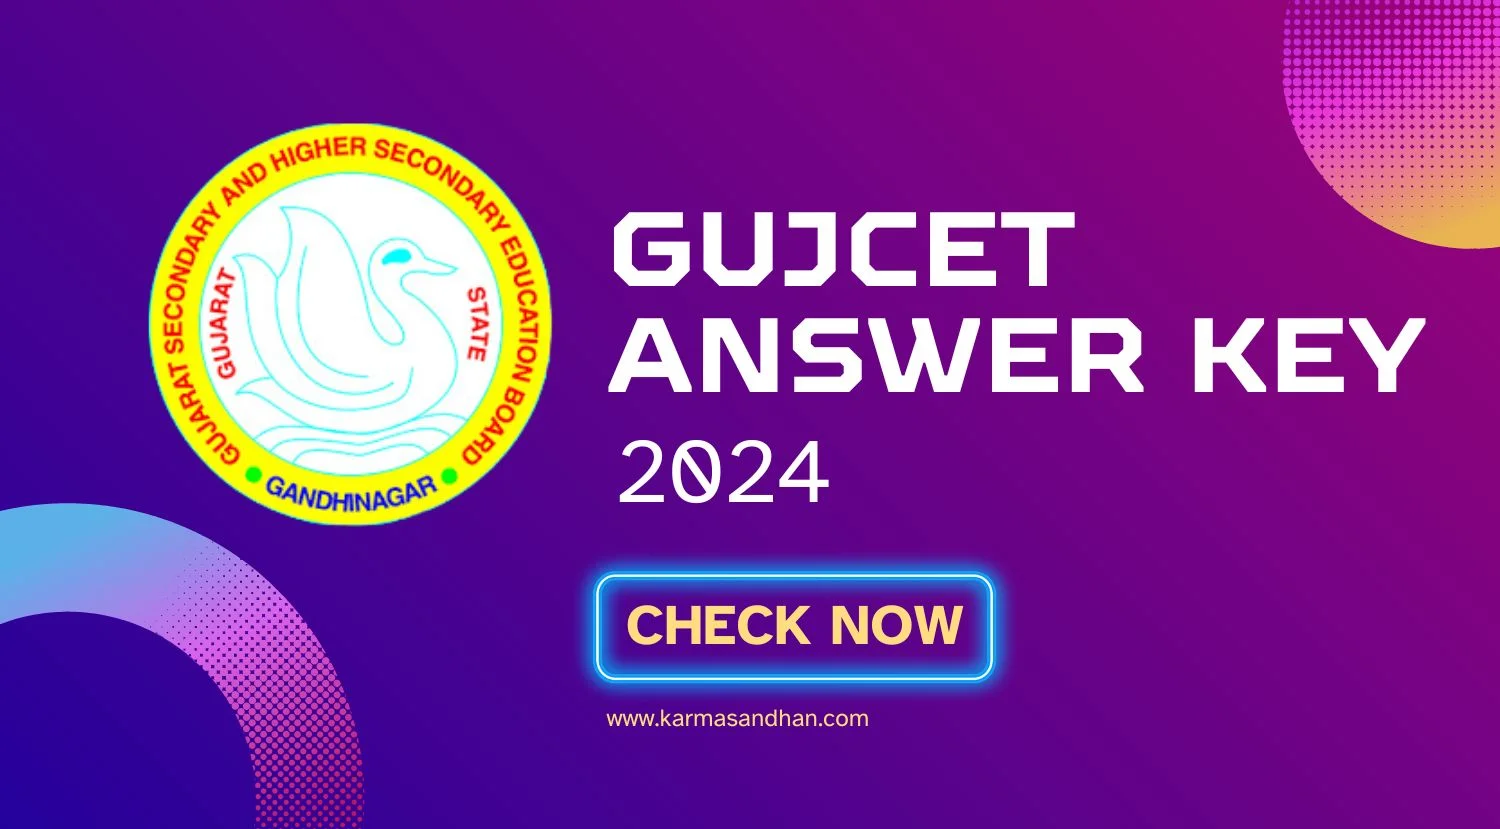 GUJCET Answer Key 2024